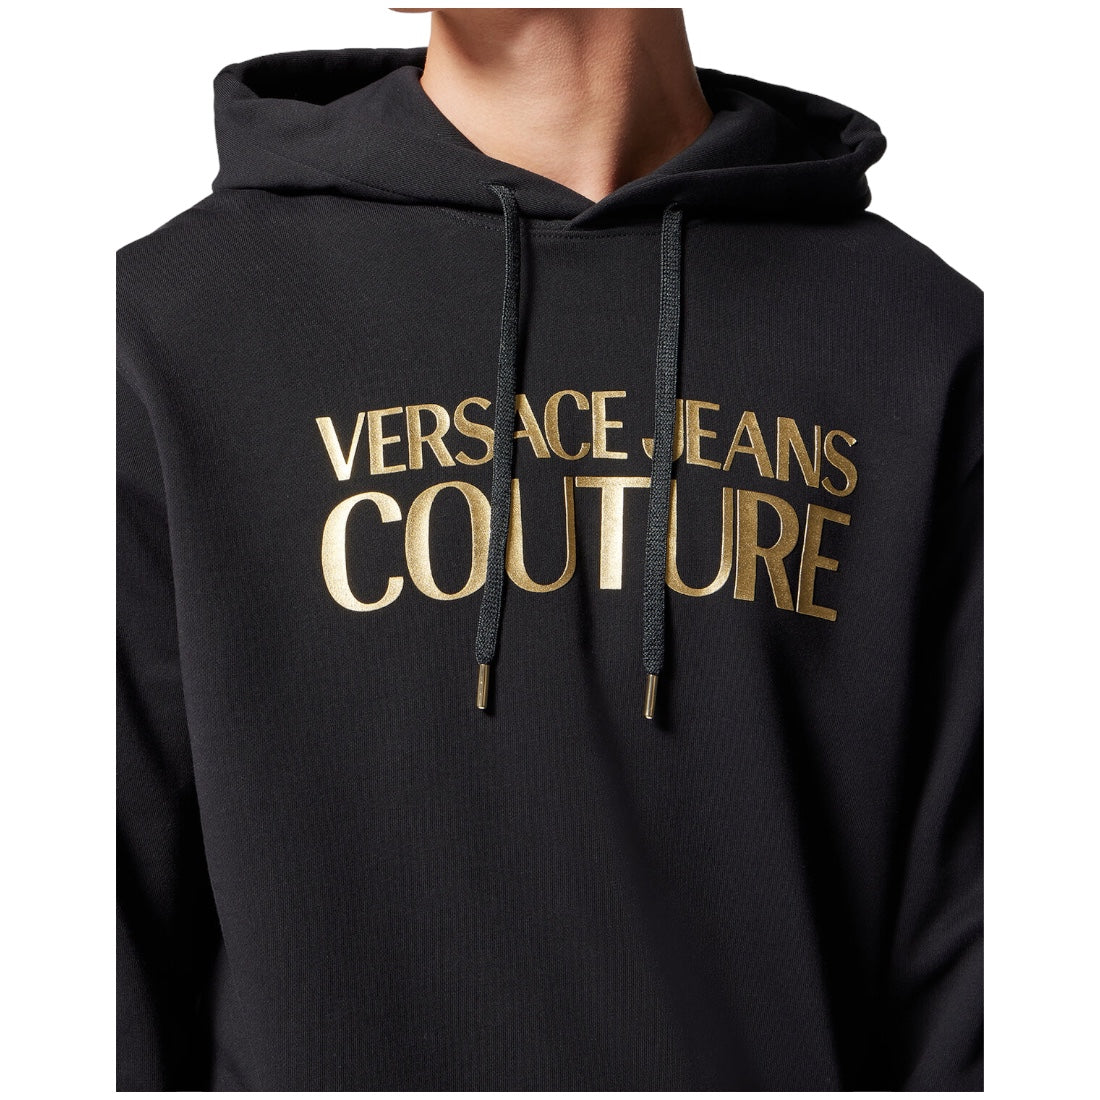 Kapuzenpullover mit dickem Folienlogo von Versace Jeans Couture